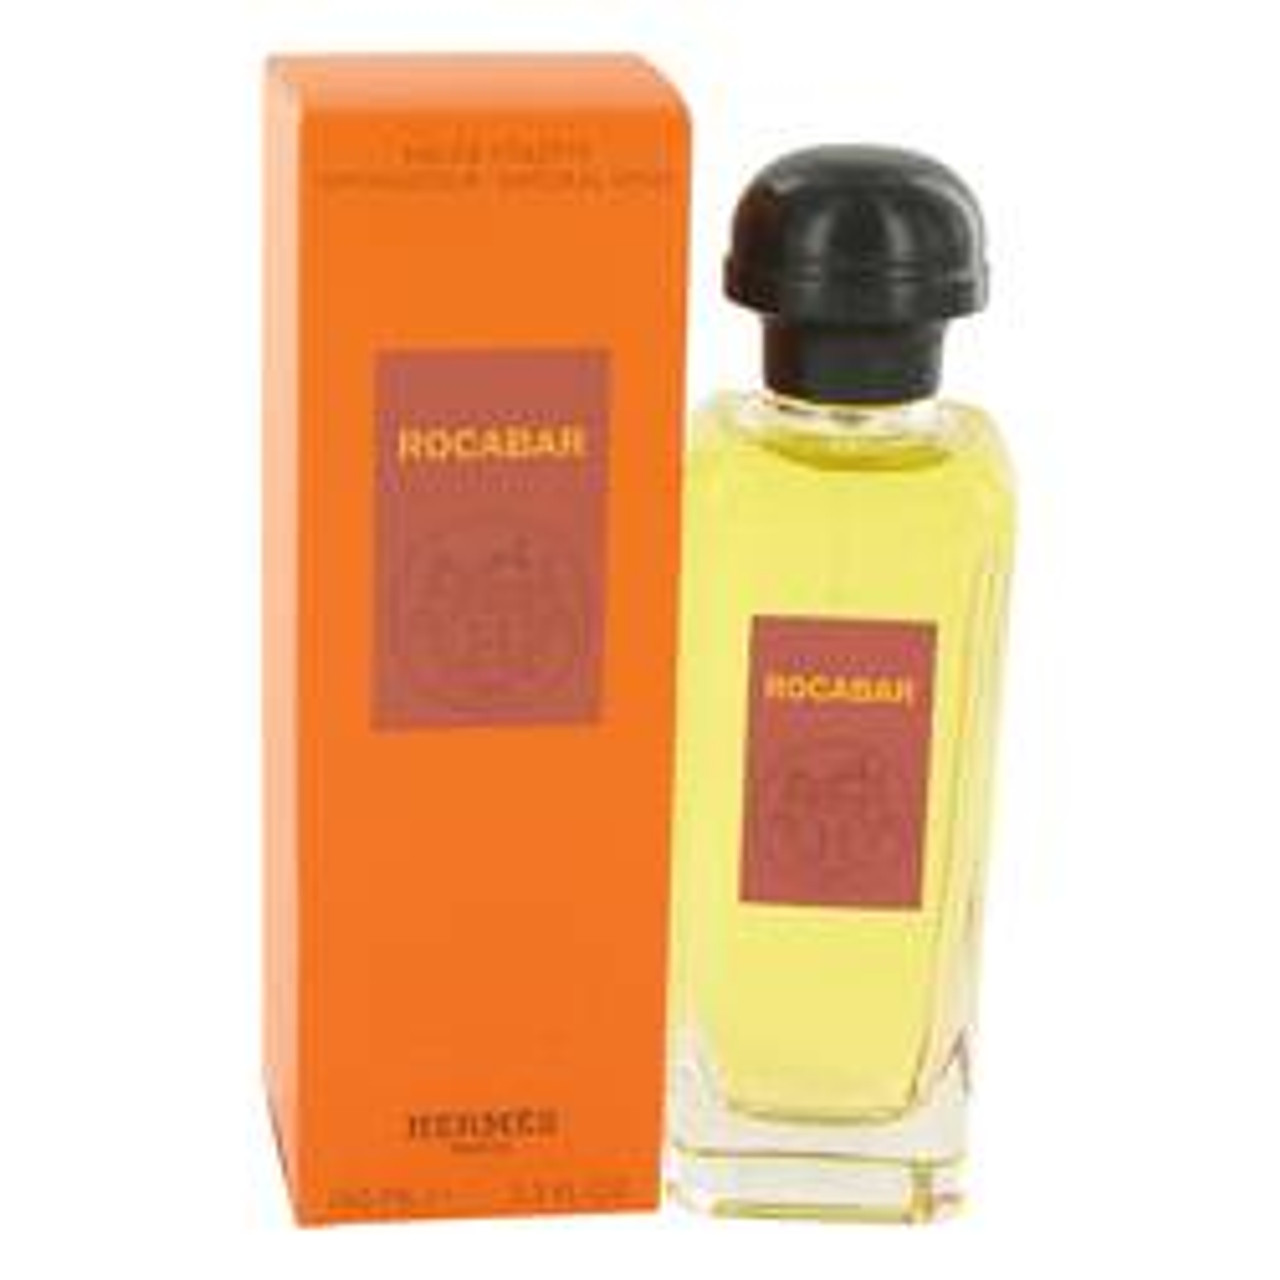 Rocabar Cologne By Hermes Eau De Toilette Spray 3.4 oz for Men - *Pre-Order